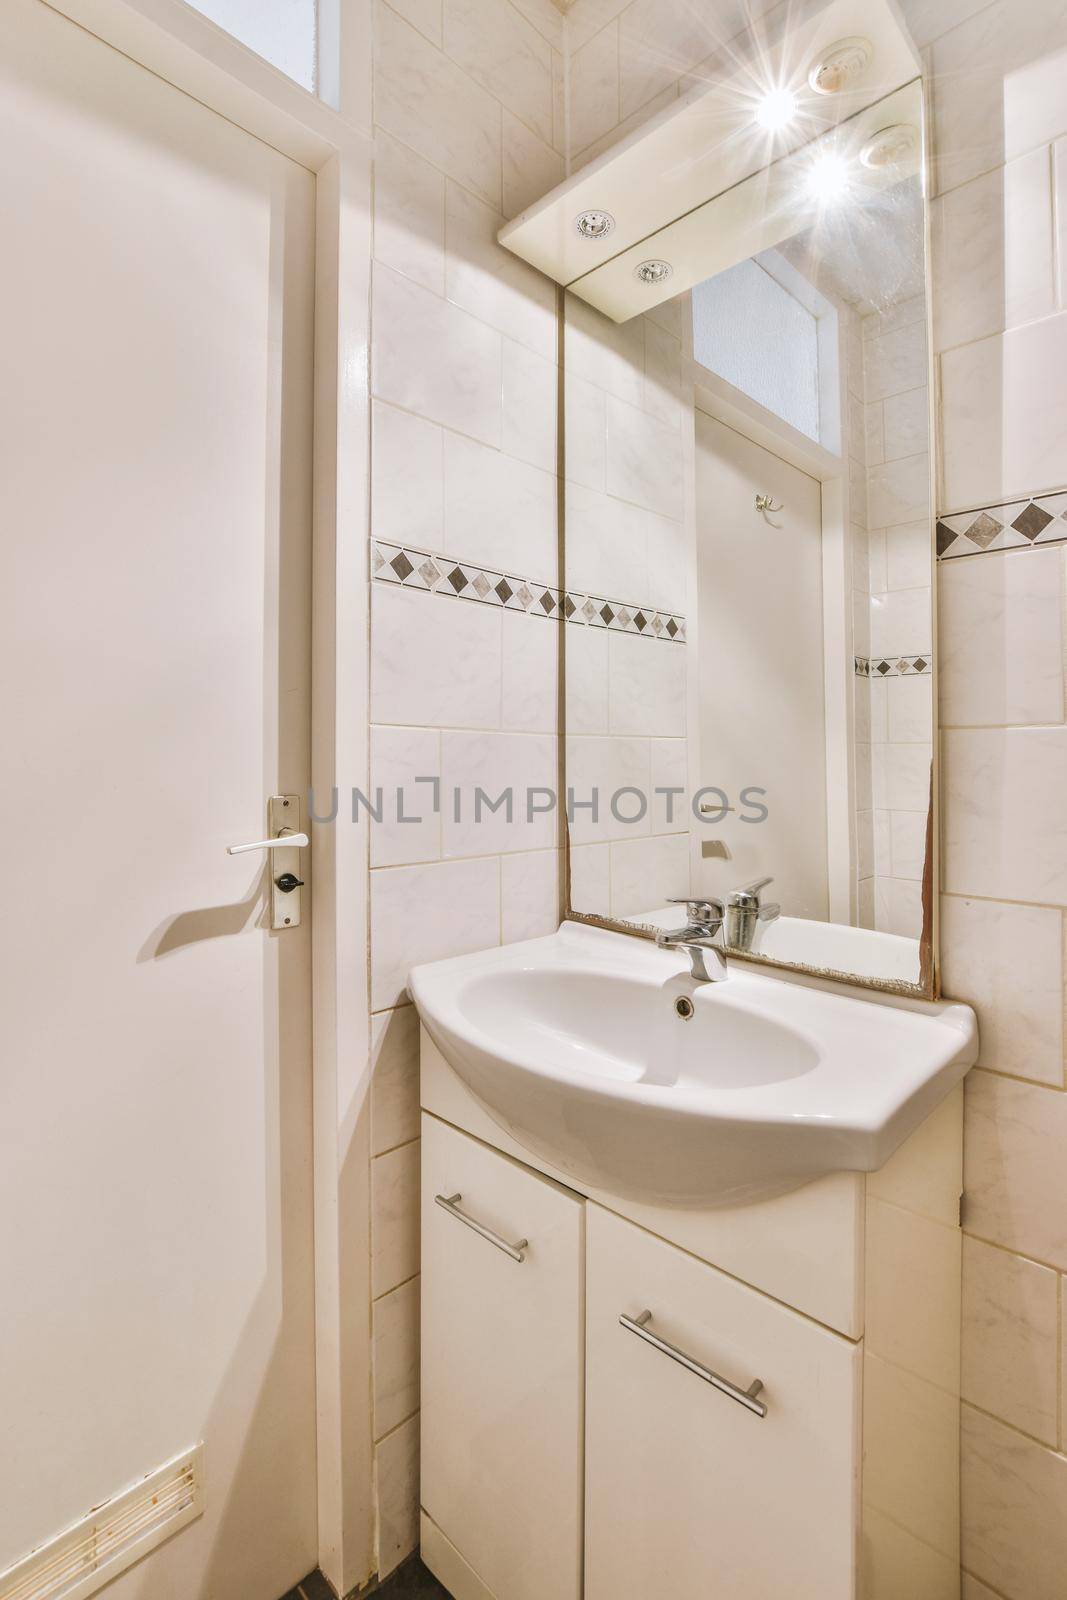 Elegant bathroom design by casamedia